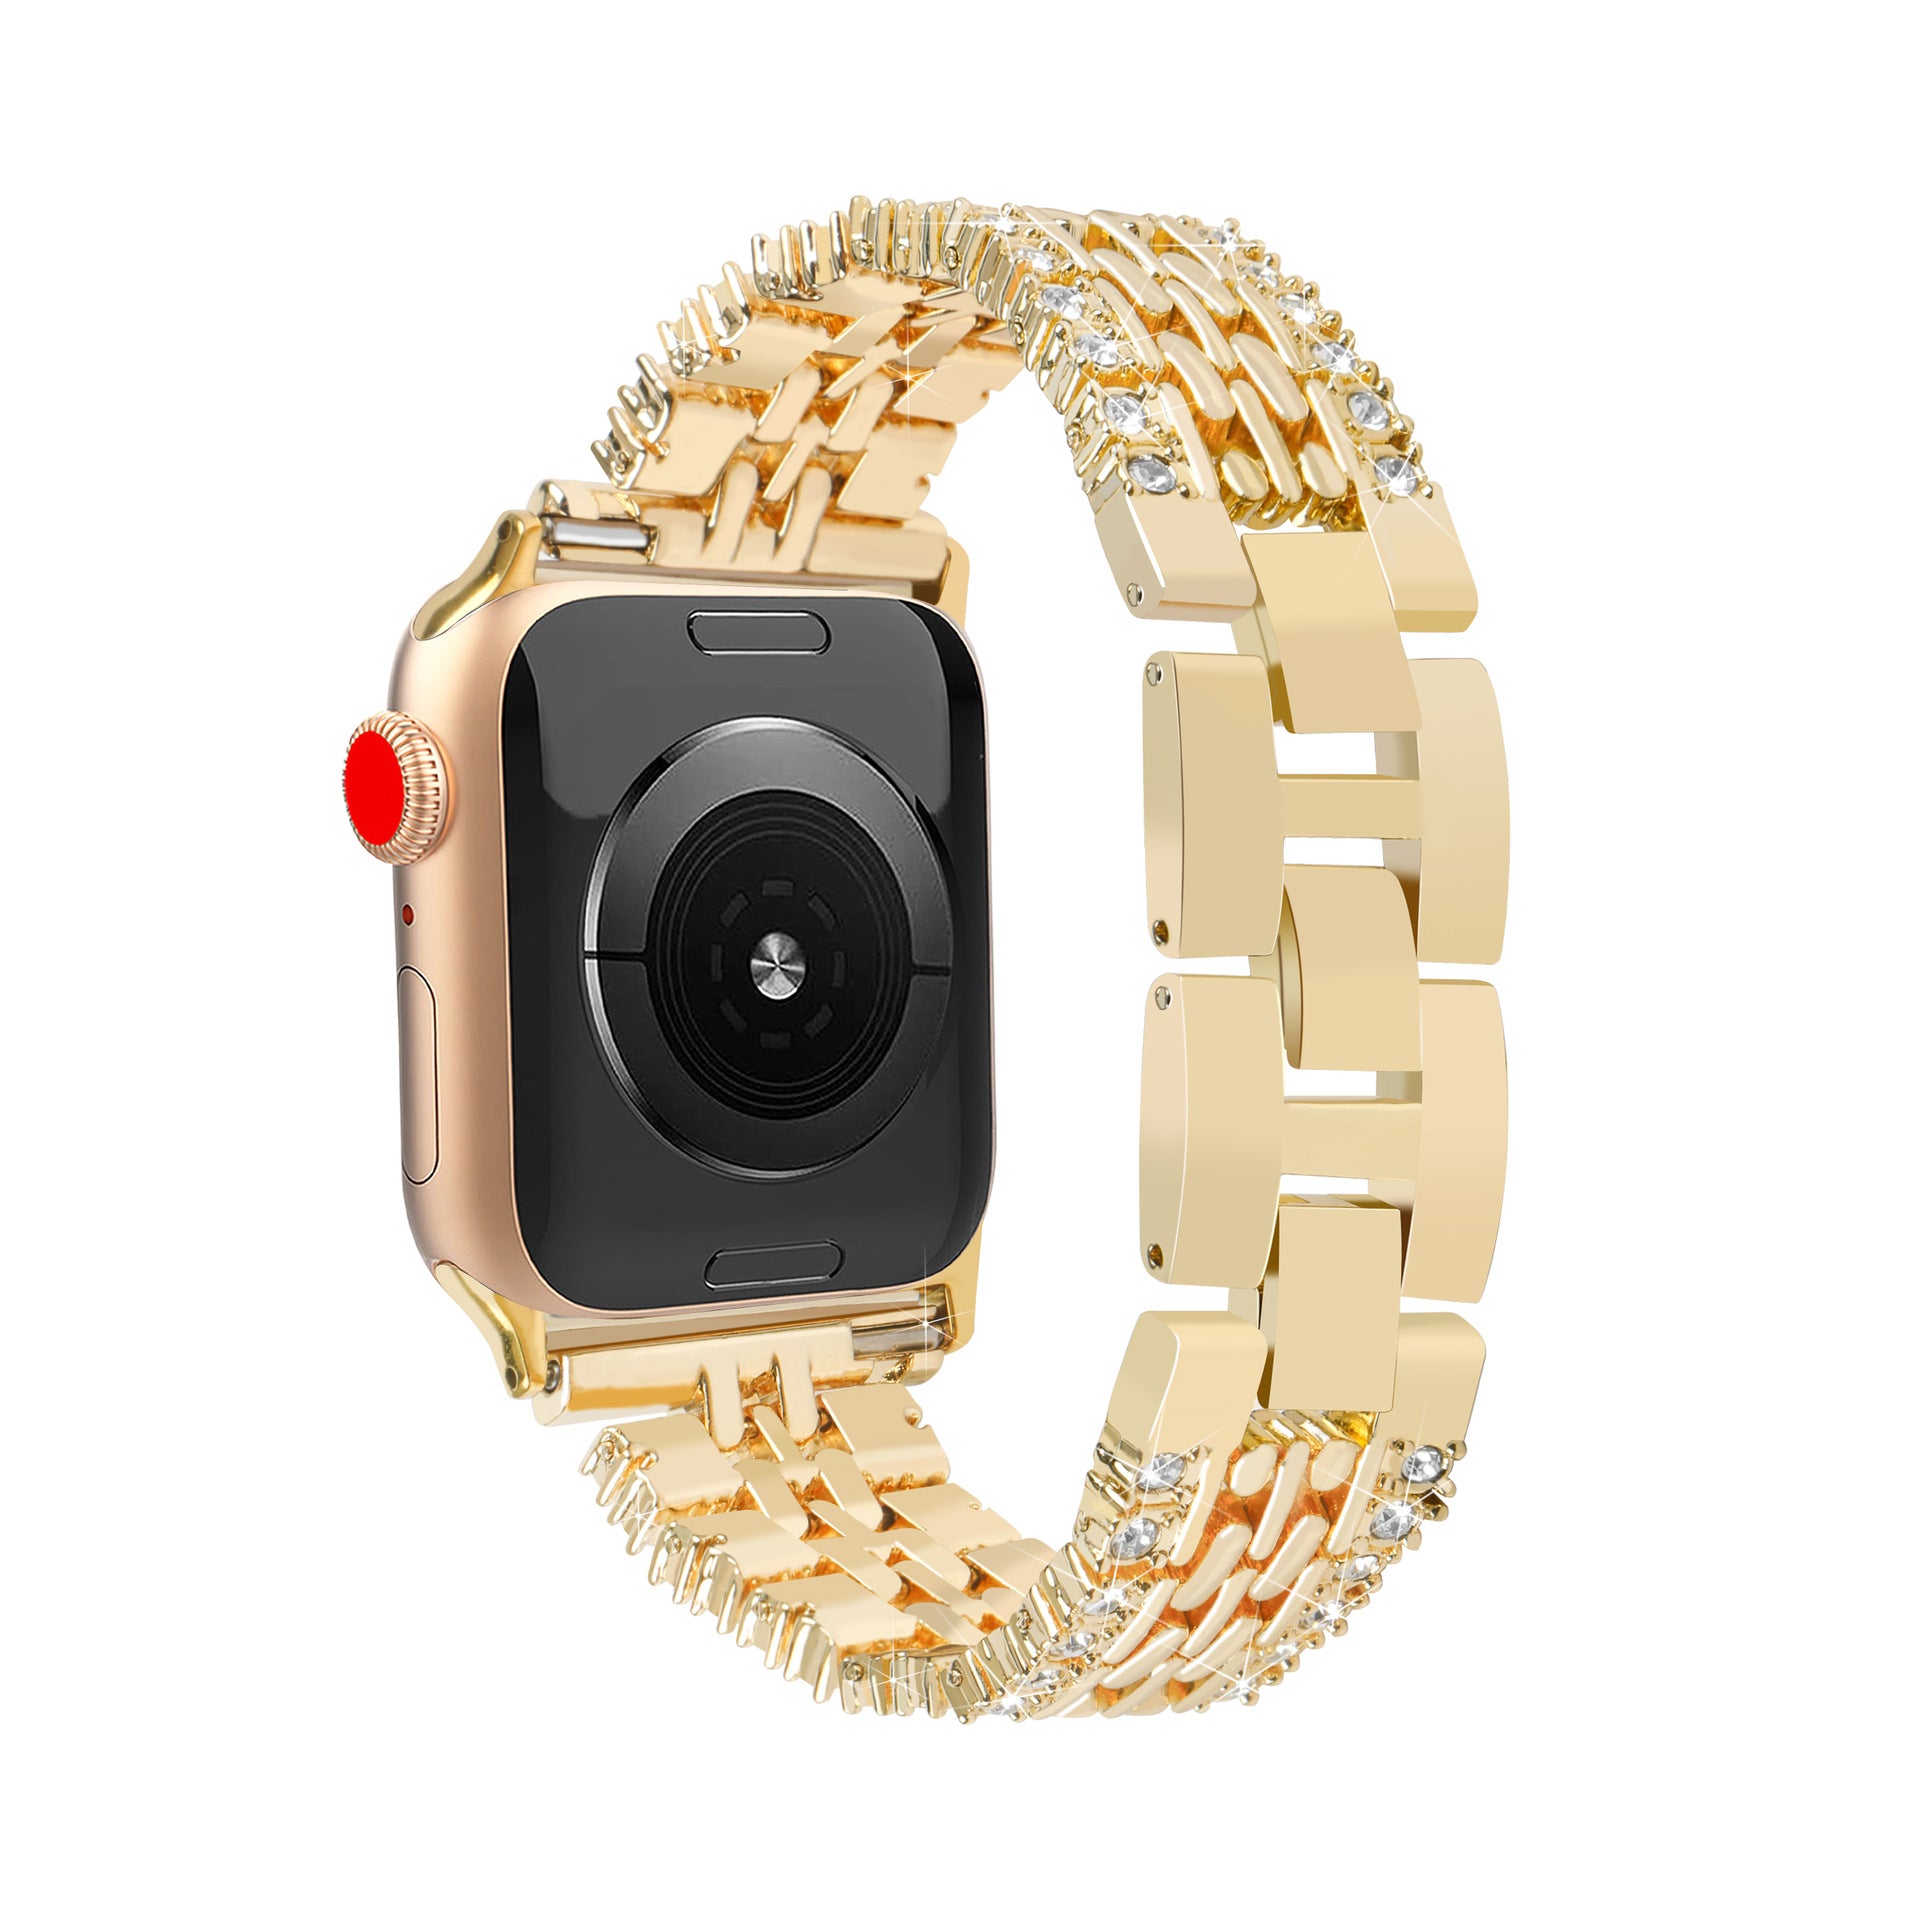 【全４色】ダブルダイヤモンドメタルバンド【アップルウォッチ】 - Apple Watchバンド専門通販【BELTIES(ベルティーズ)】